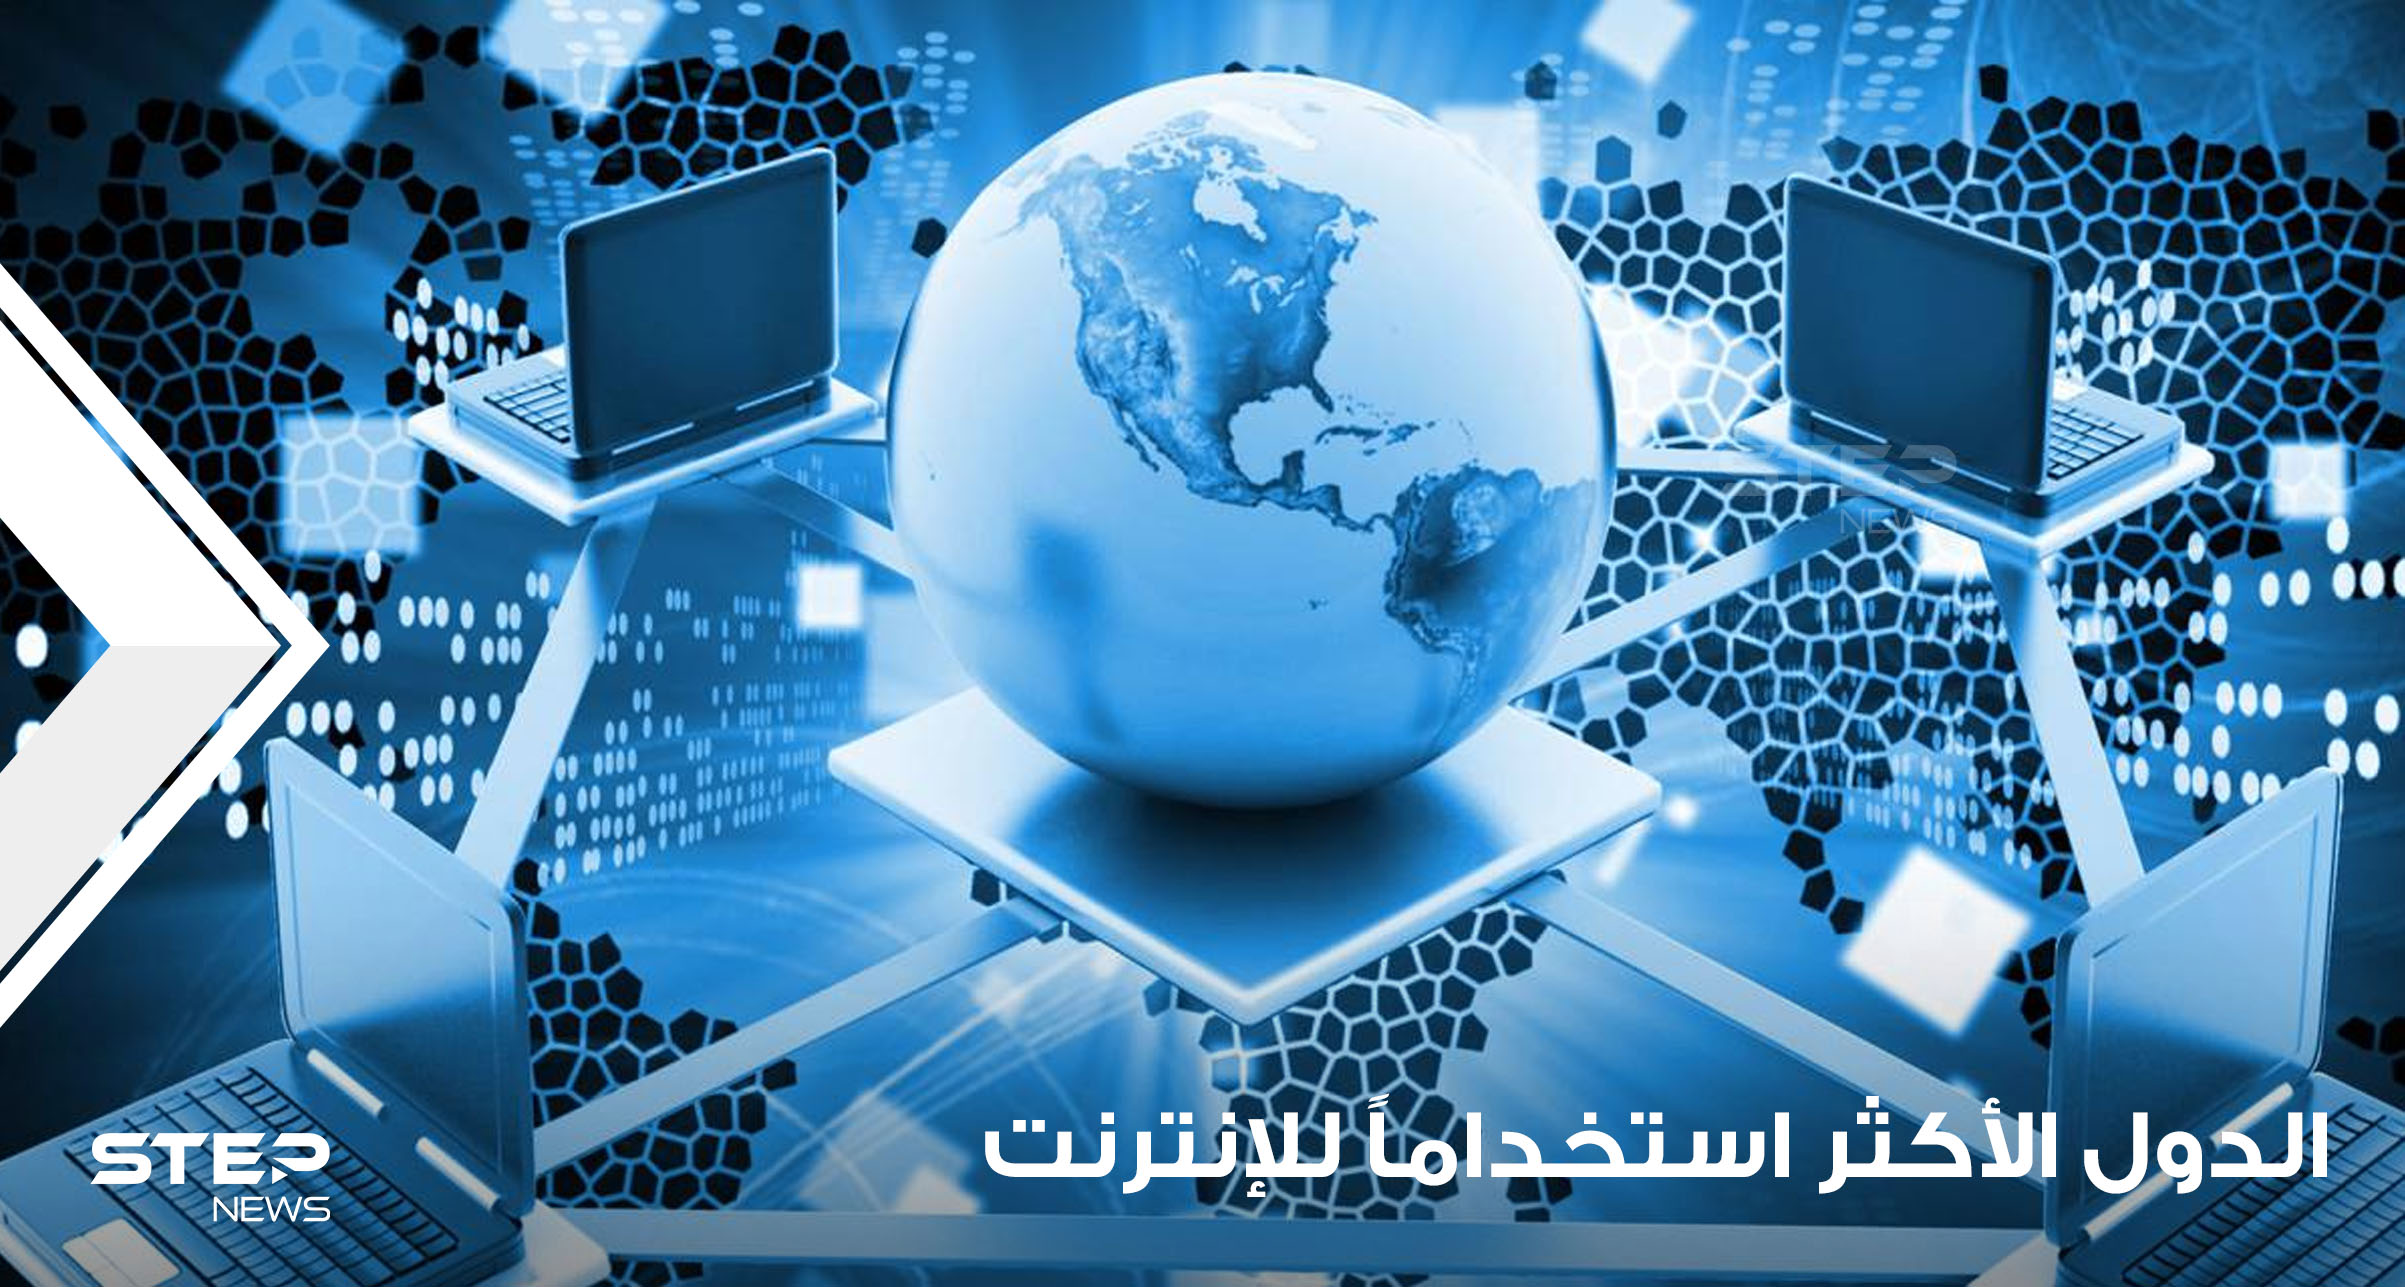 تفوقت على أمريكا وبلدان أوروبية.. 3 دول عربية تتصدر قائمة البلدان الأكثر استخداماً للإنترنت بالعالم